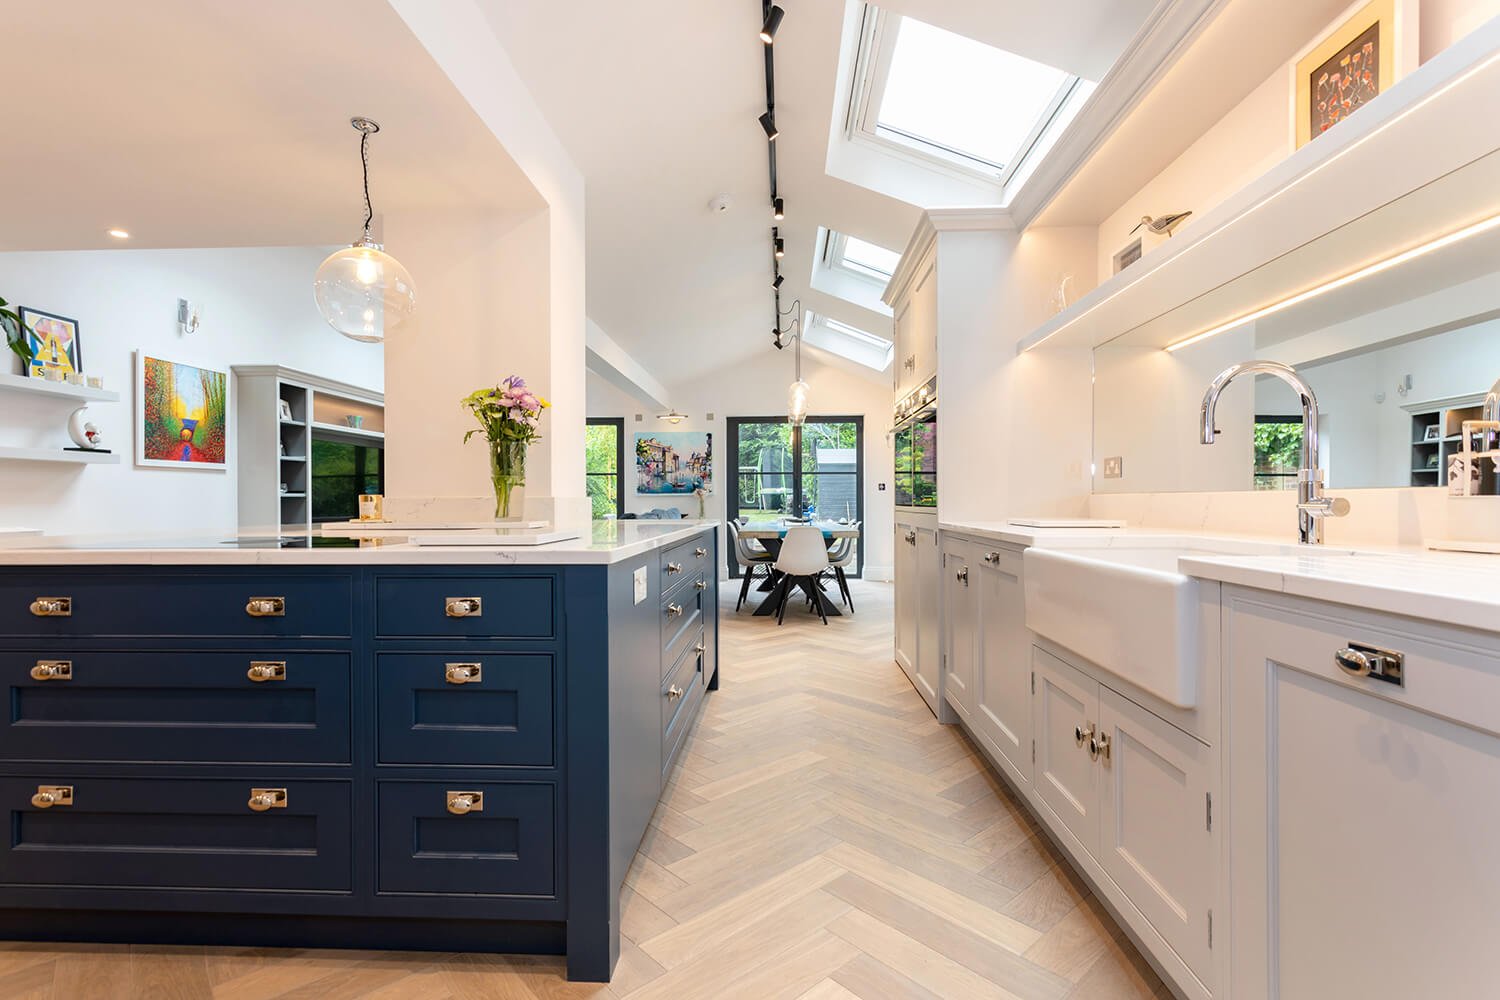 acr-build-skylight-kitchen-design-parquet-flooring.jpg